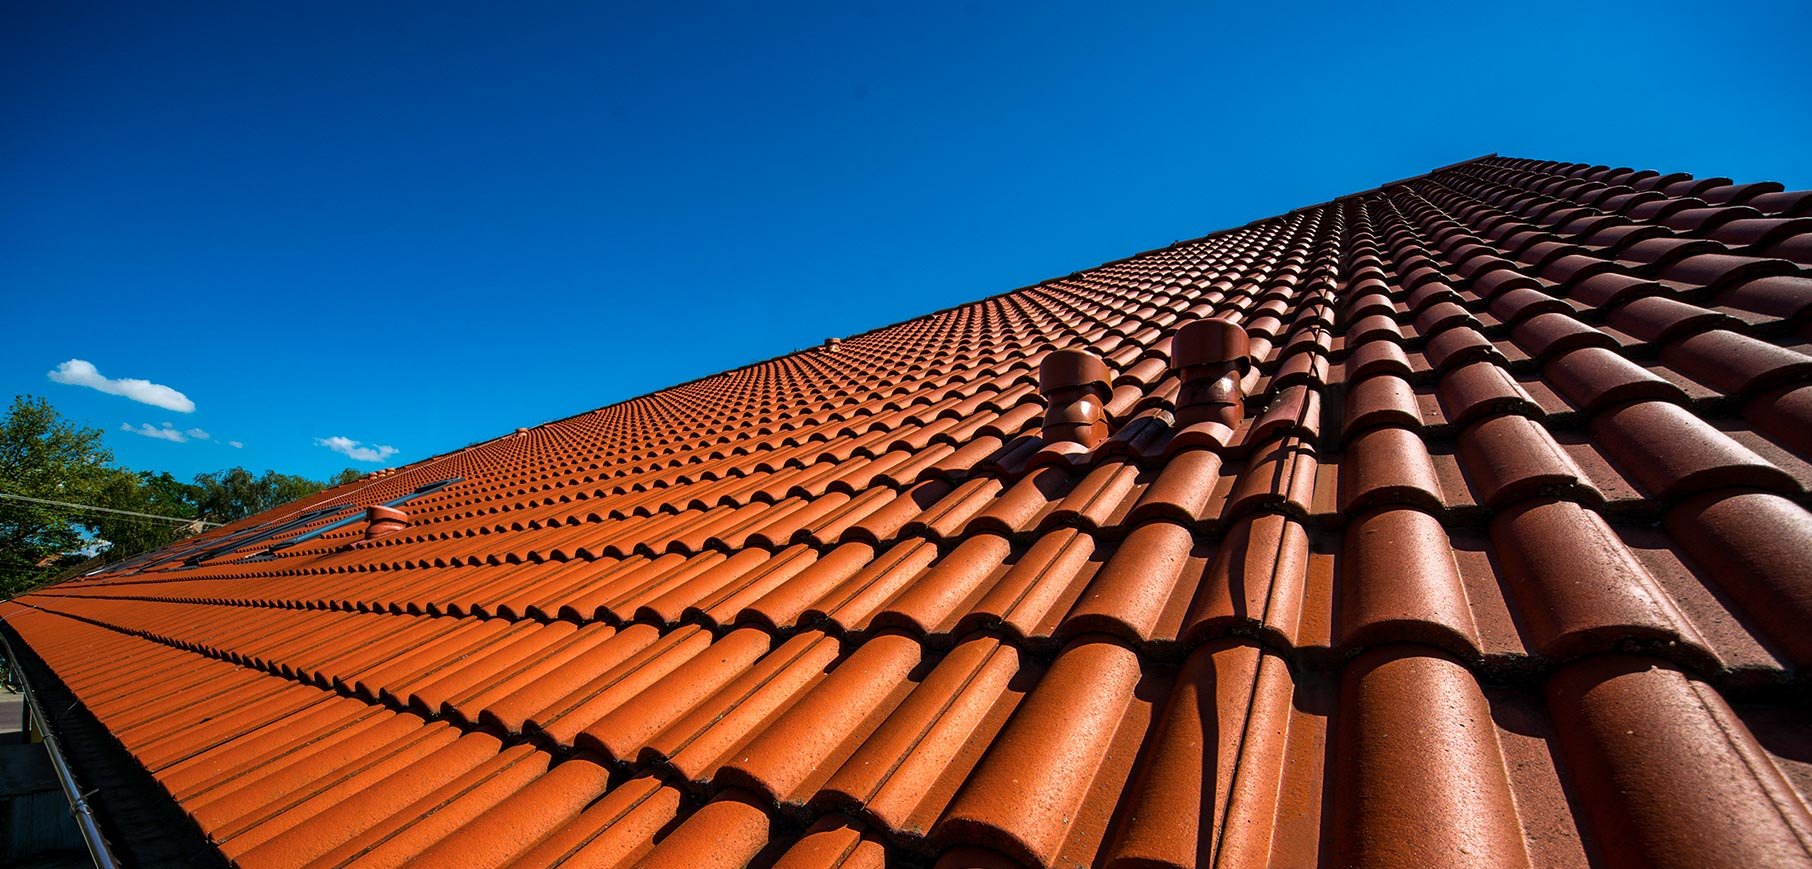 Vyrábíme střechy již 100 let